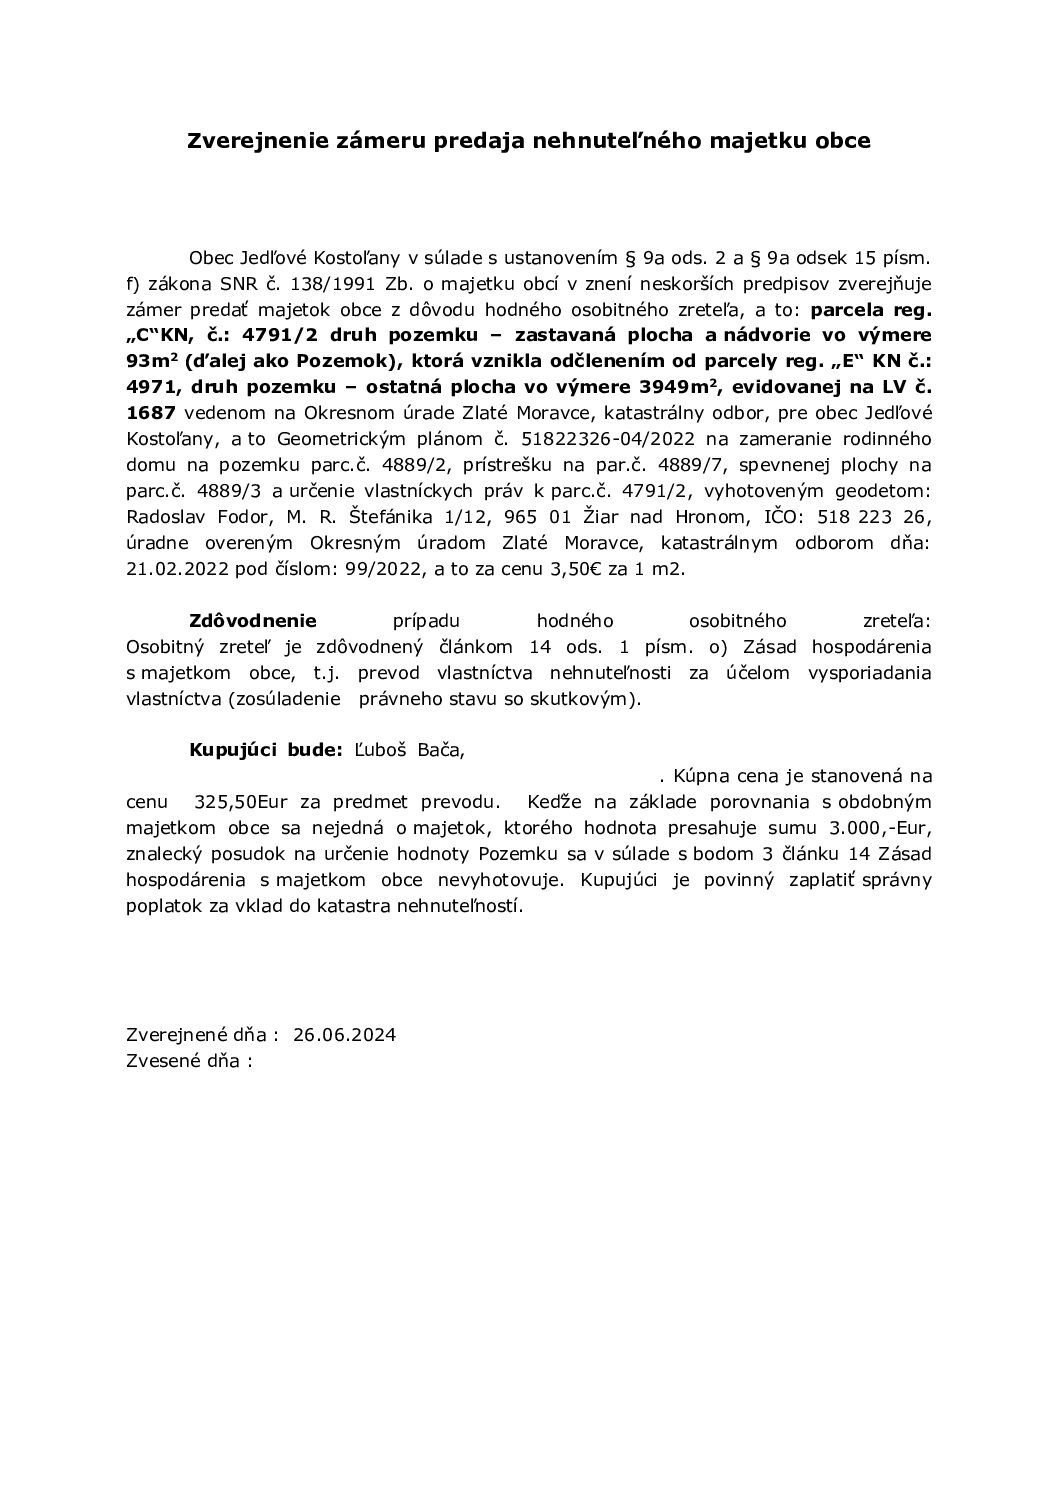 Zverejnenie zámeru predaja nehnuteľného majetku obce (Ľ. Bača)